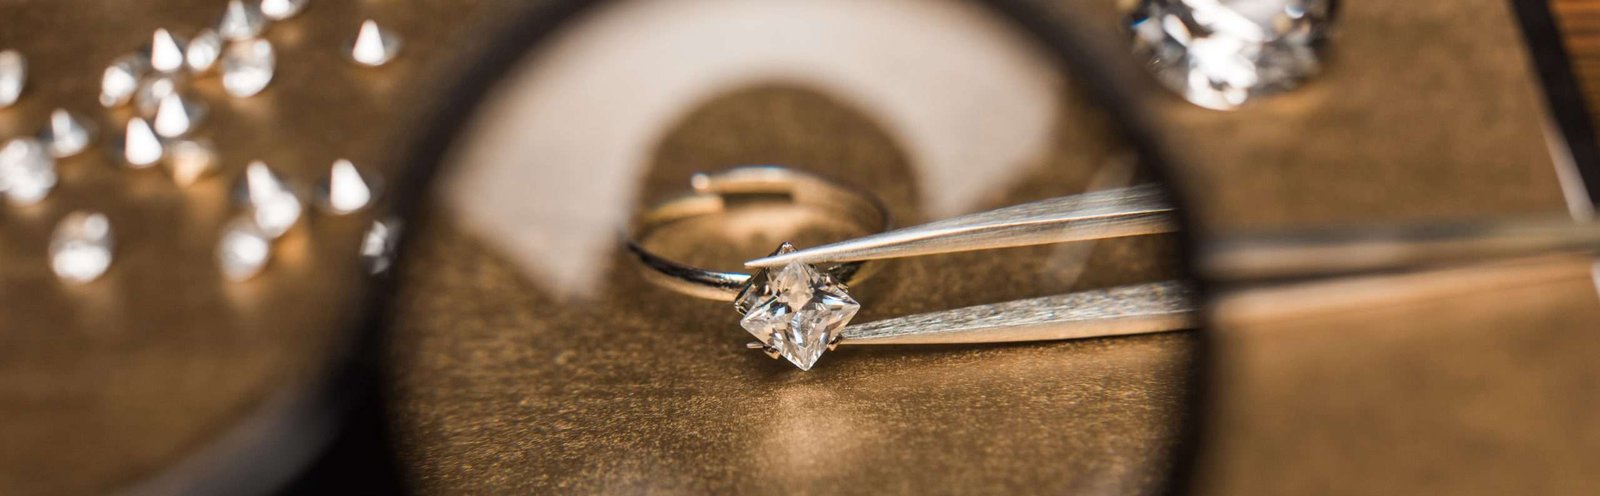 princess cut diamond ring held by tweezers